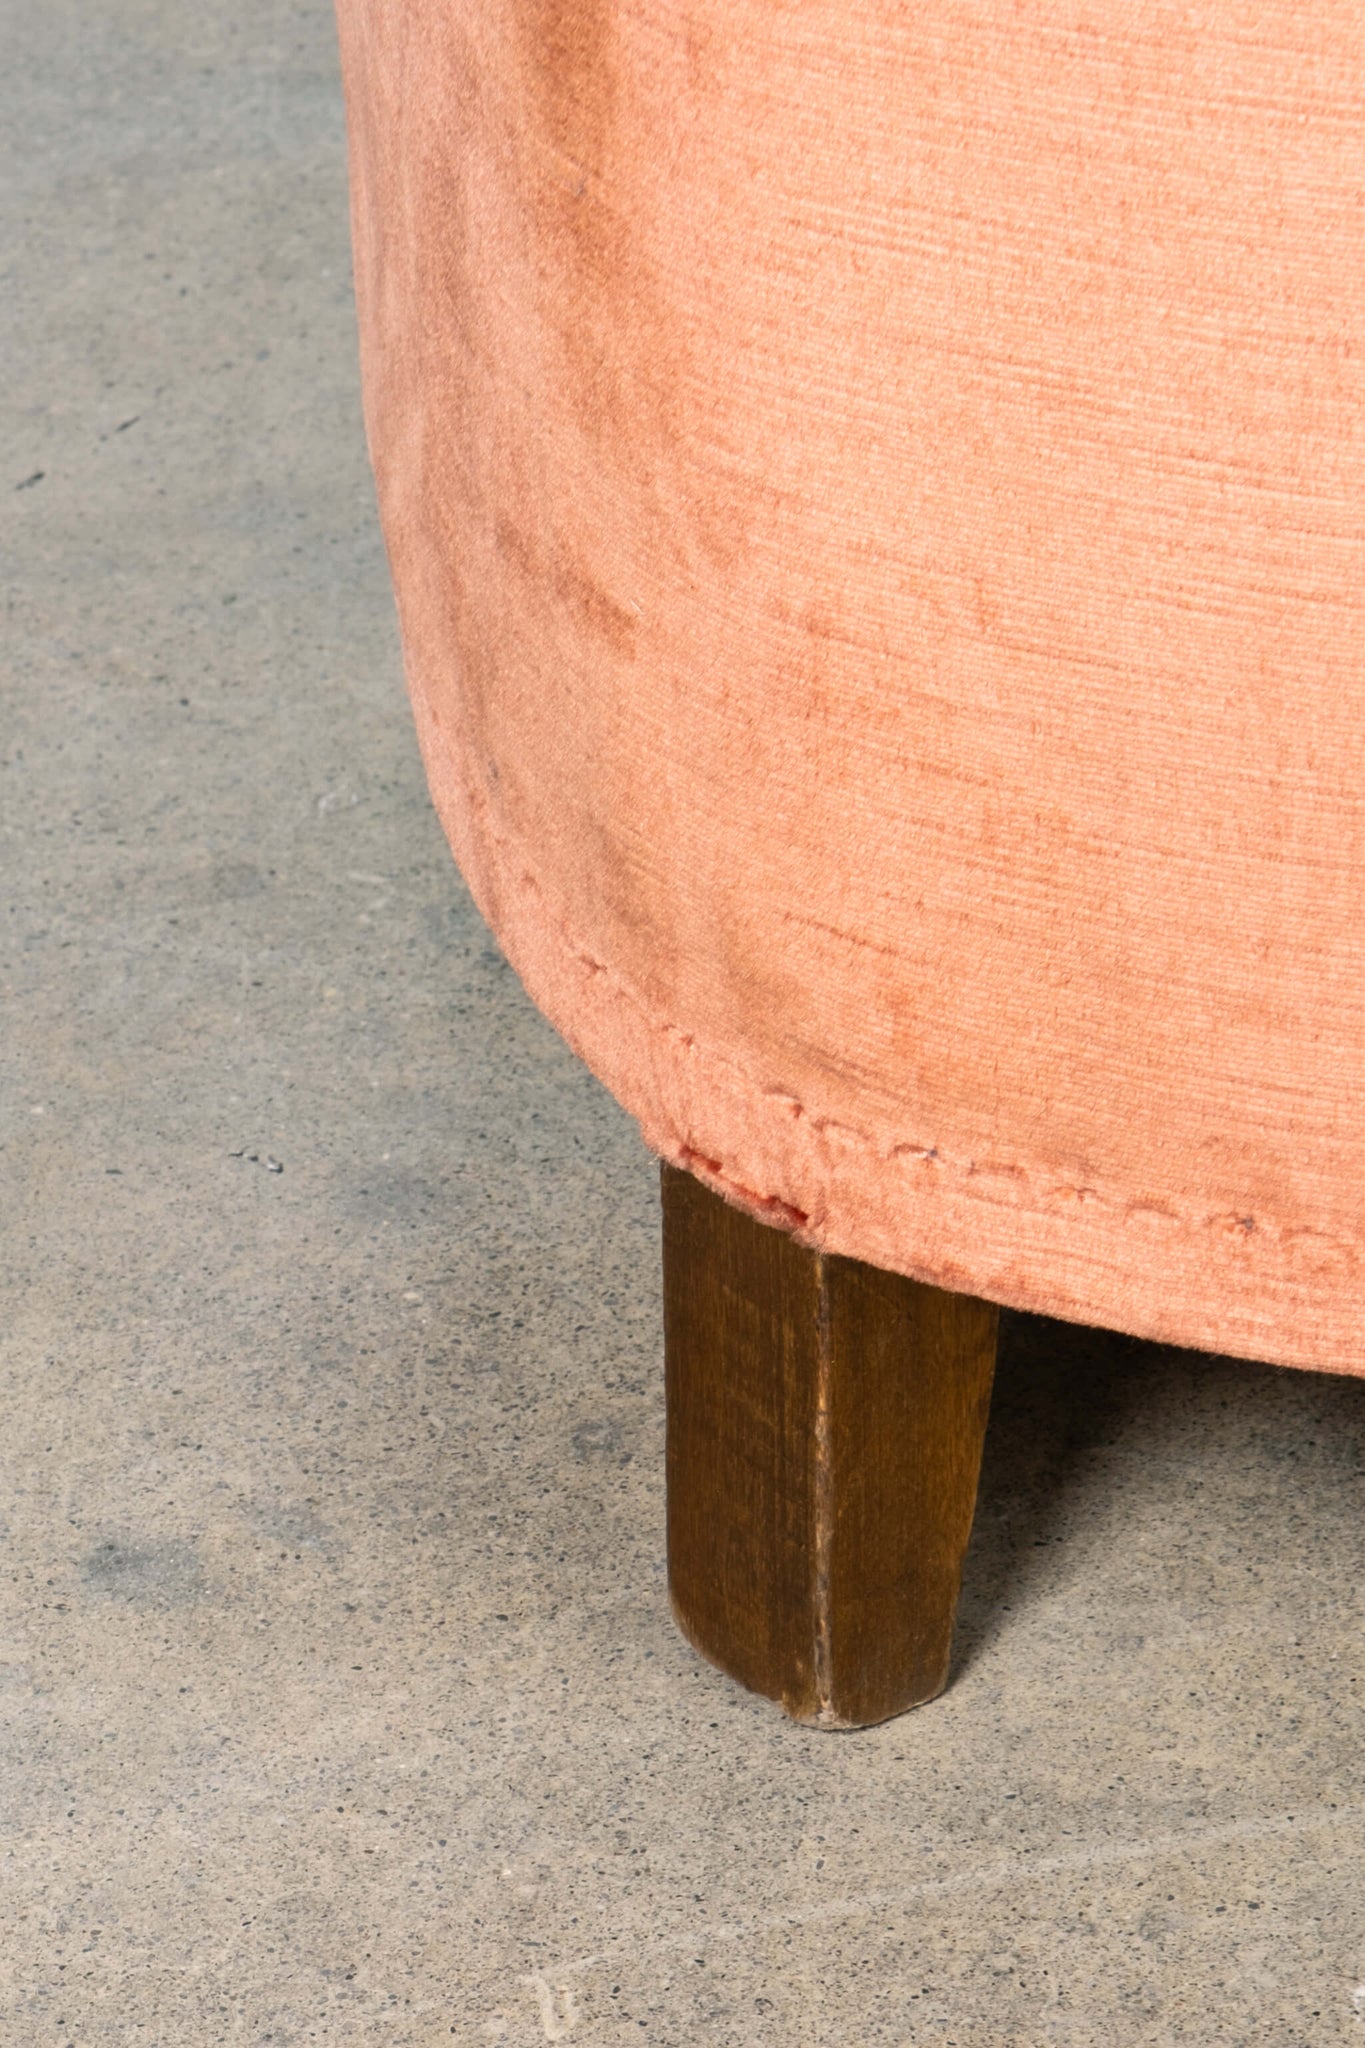 Extremely Rare Vintage Pink Orange Sofa with Curved Frame Detail Casa Giardino Gio Ponti, leg detail